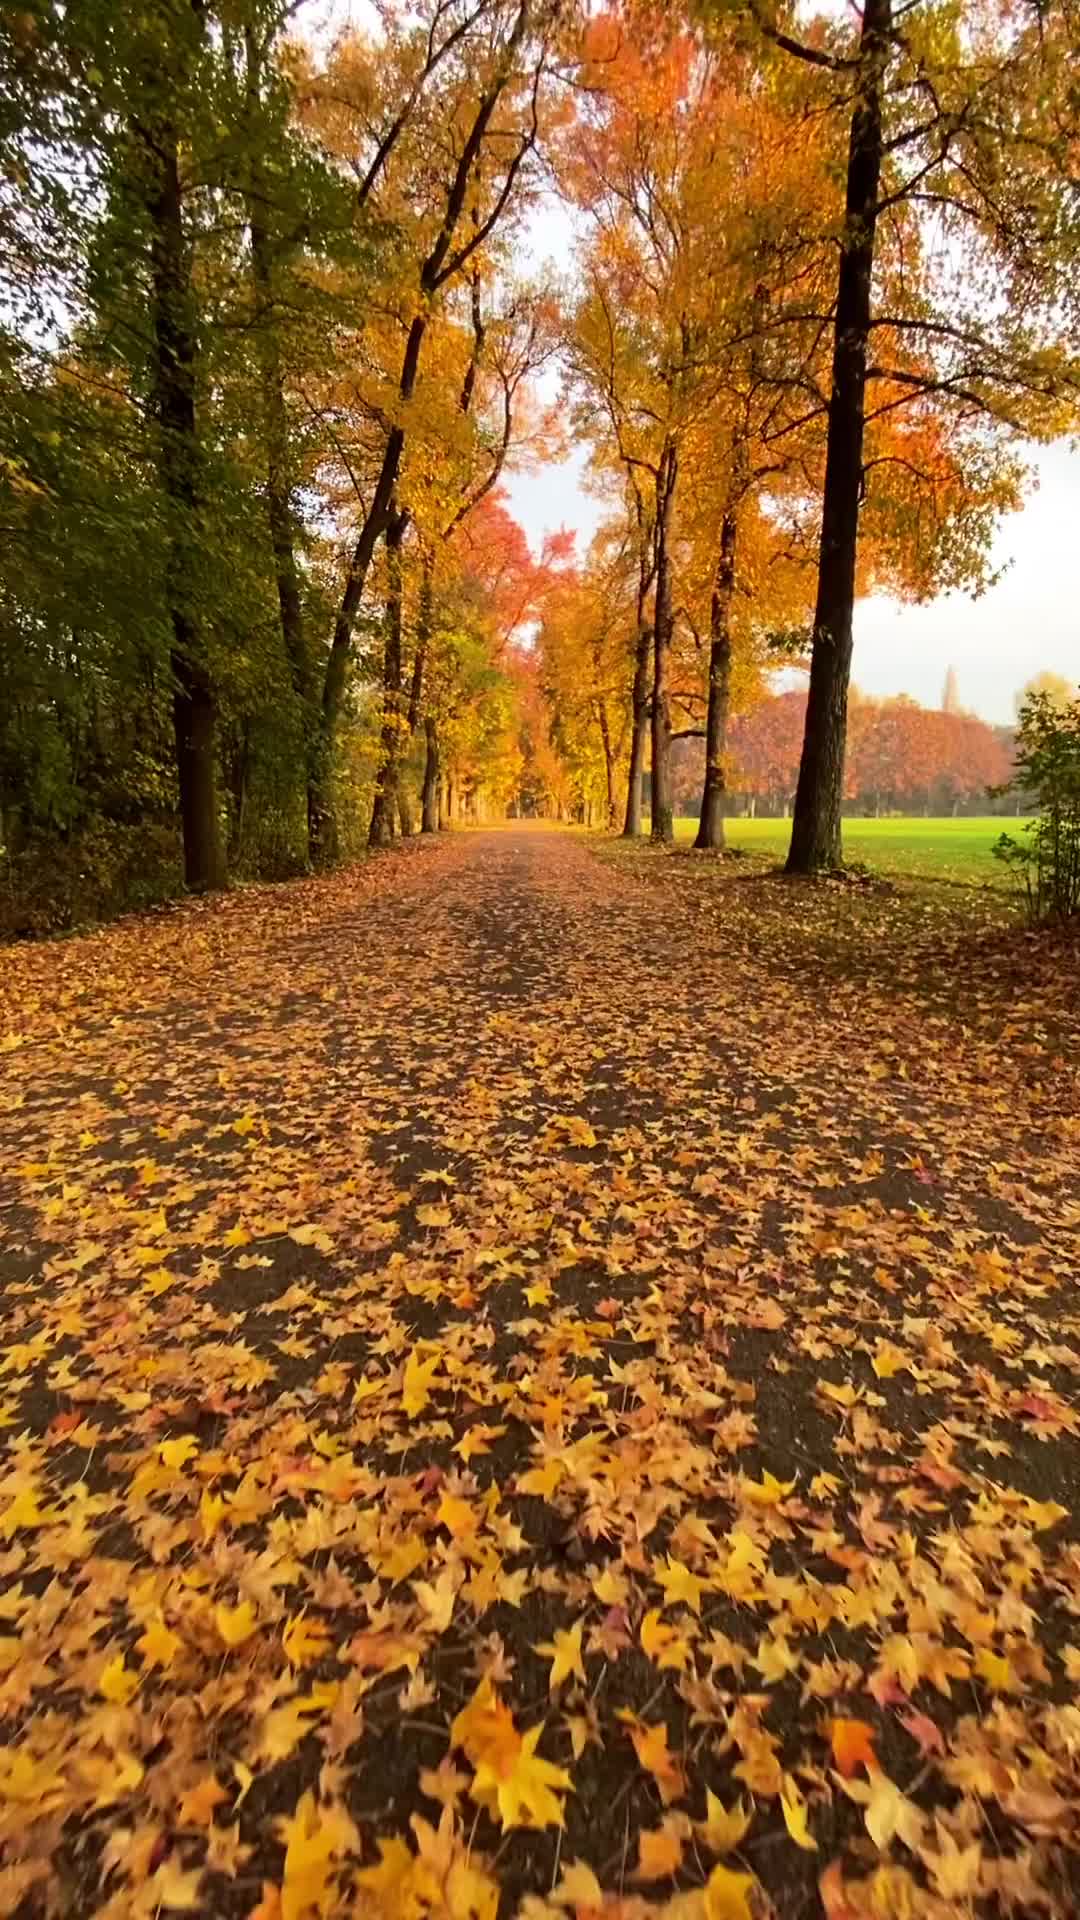 Autumn Magic at Parco di Monza, Italy 🍂✨